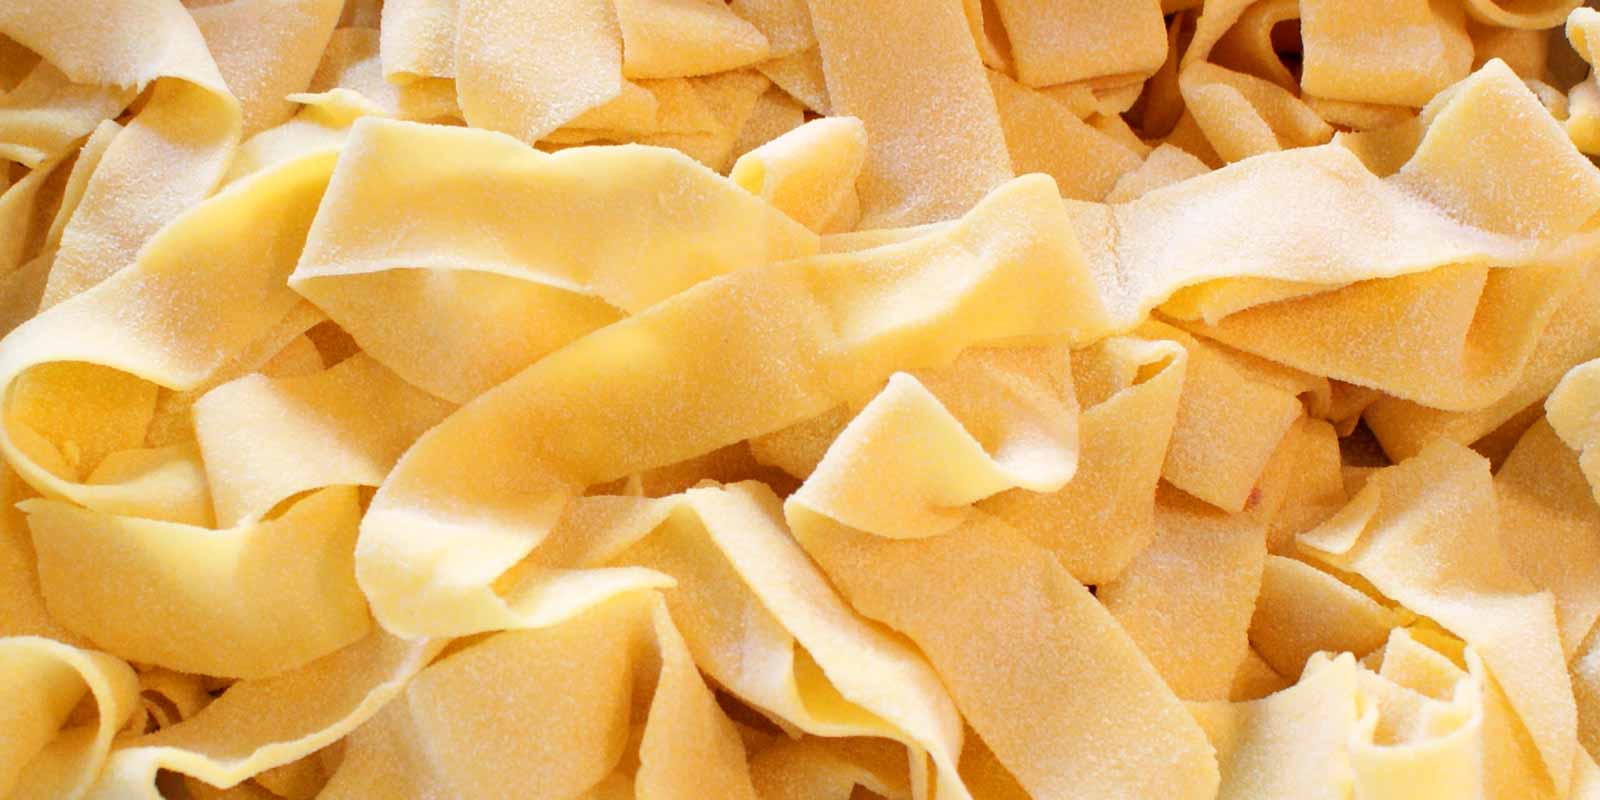 De Cecco pasta og mel Det italienske selskapet De Cecco har produsert pasta og mel av utmerket kvalitet siden 1886.
Se for deg selv!